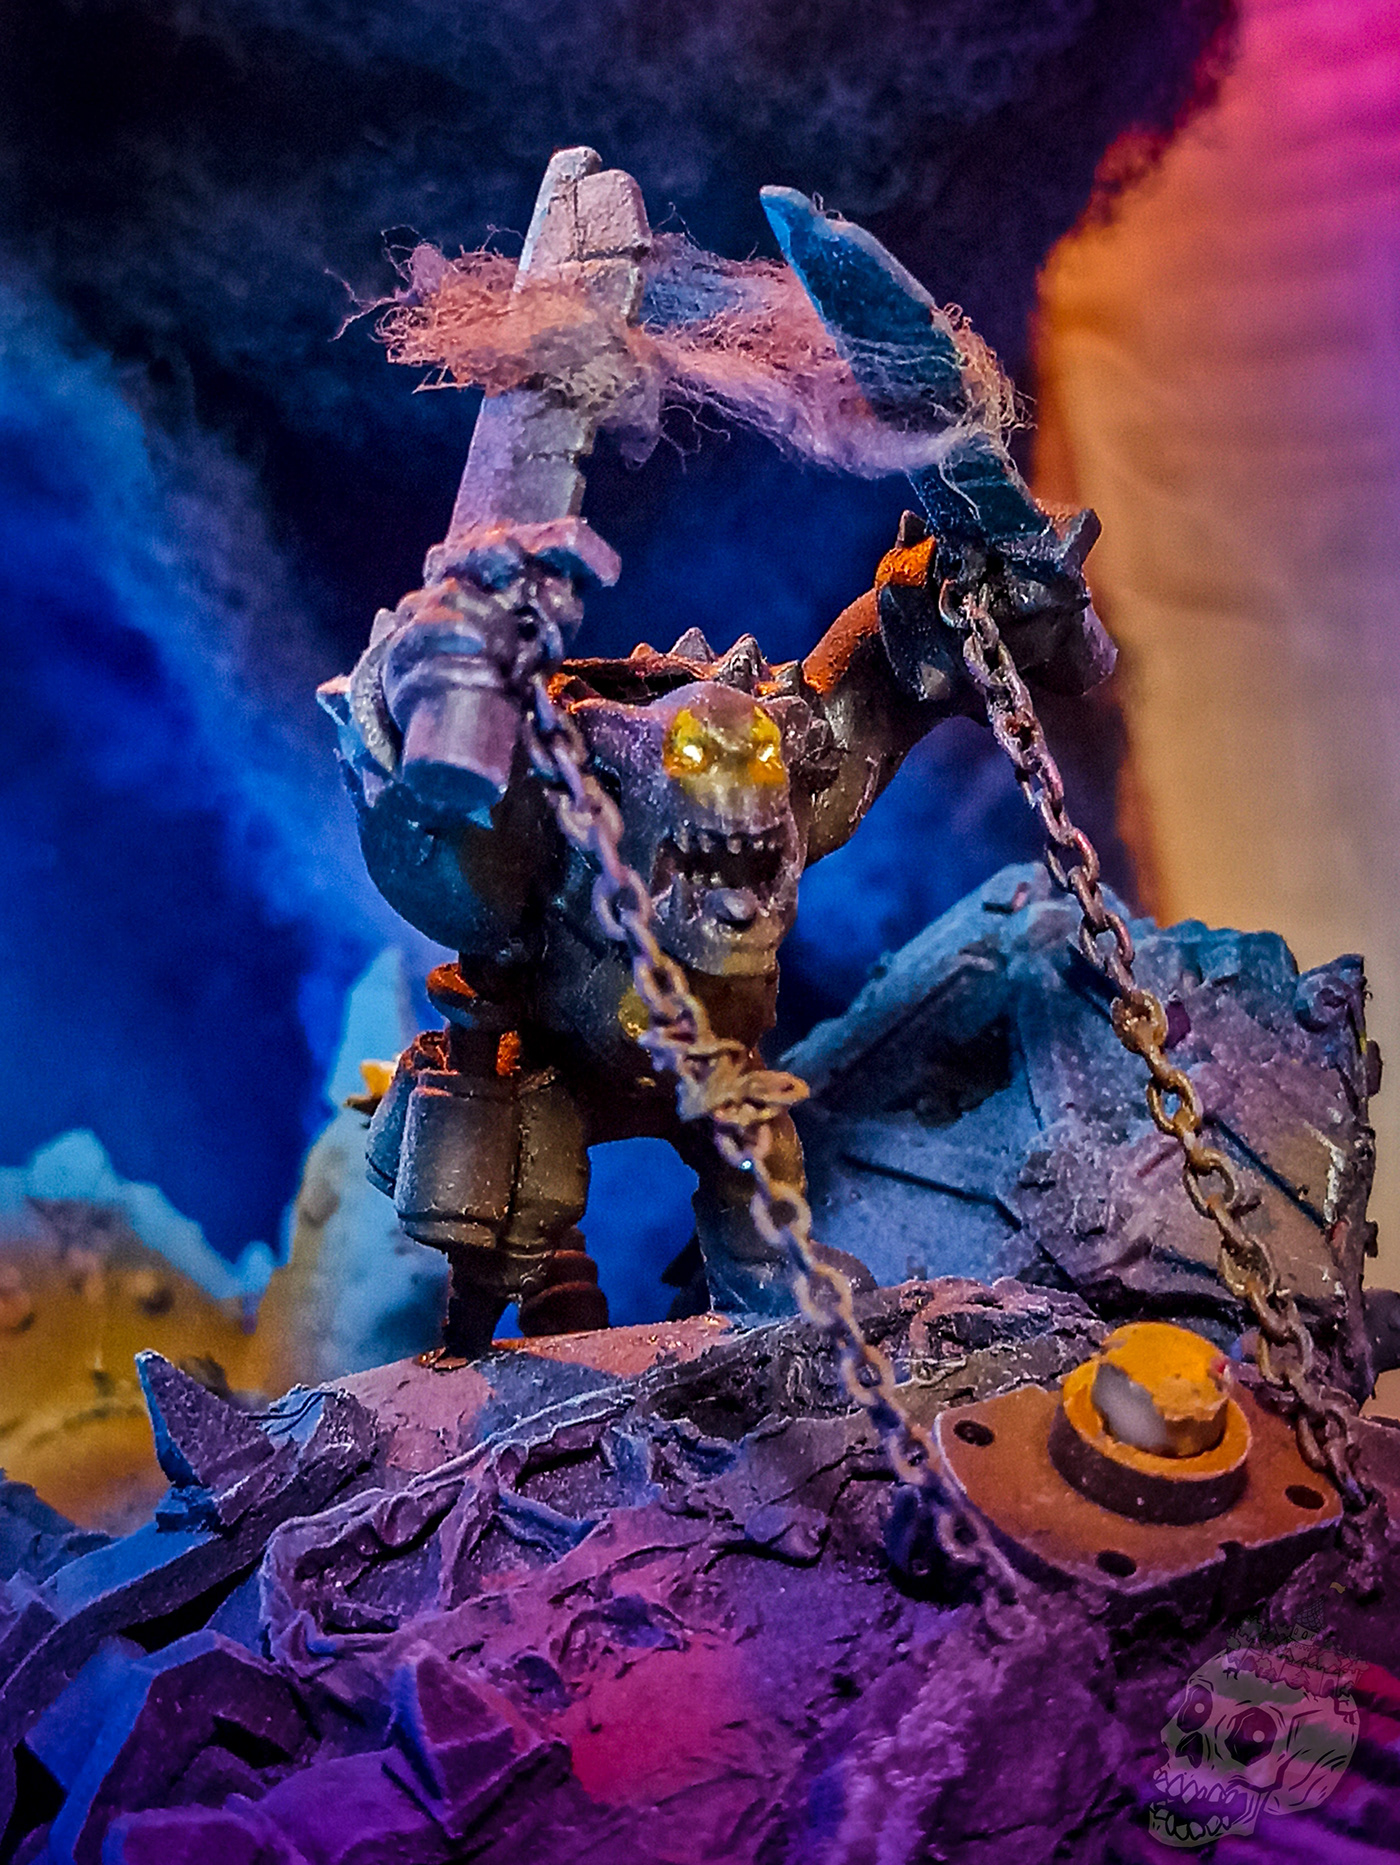 40k asteroid craft fire handmade ork rage spaceship Warhammer Wars